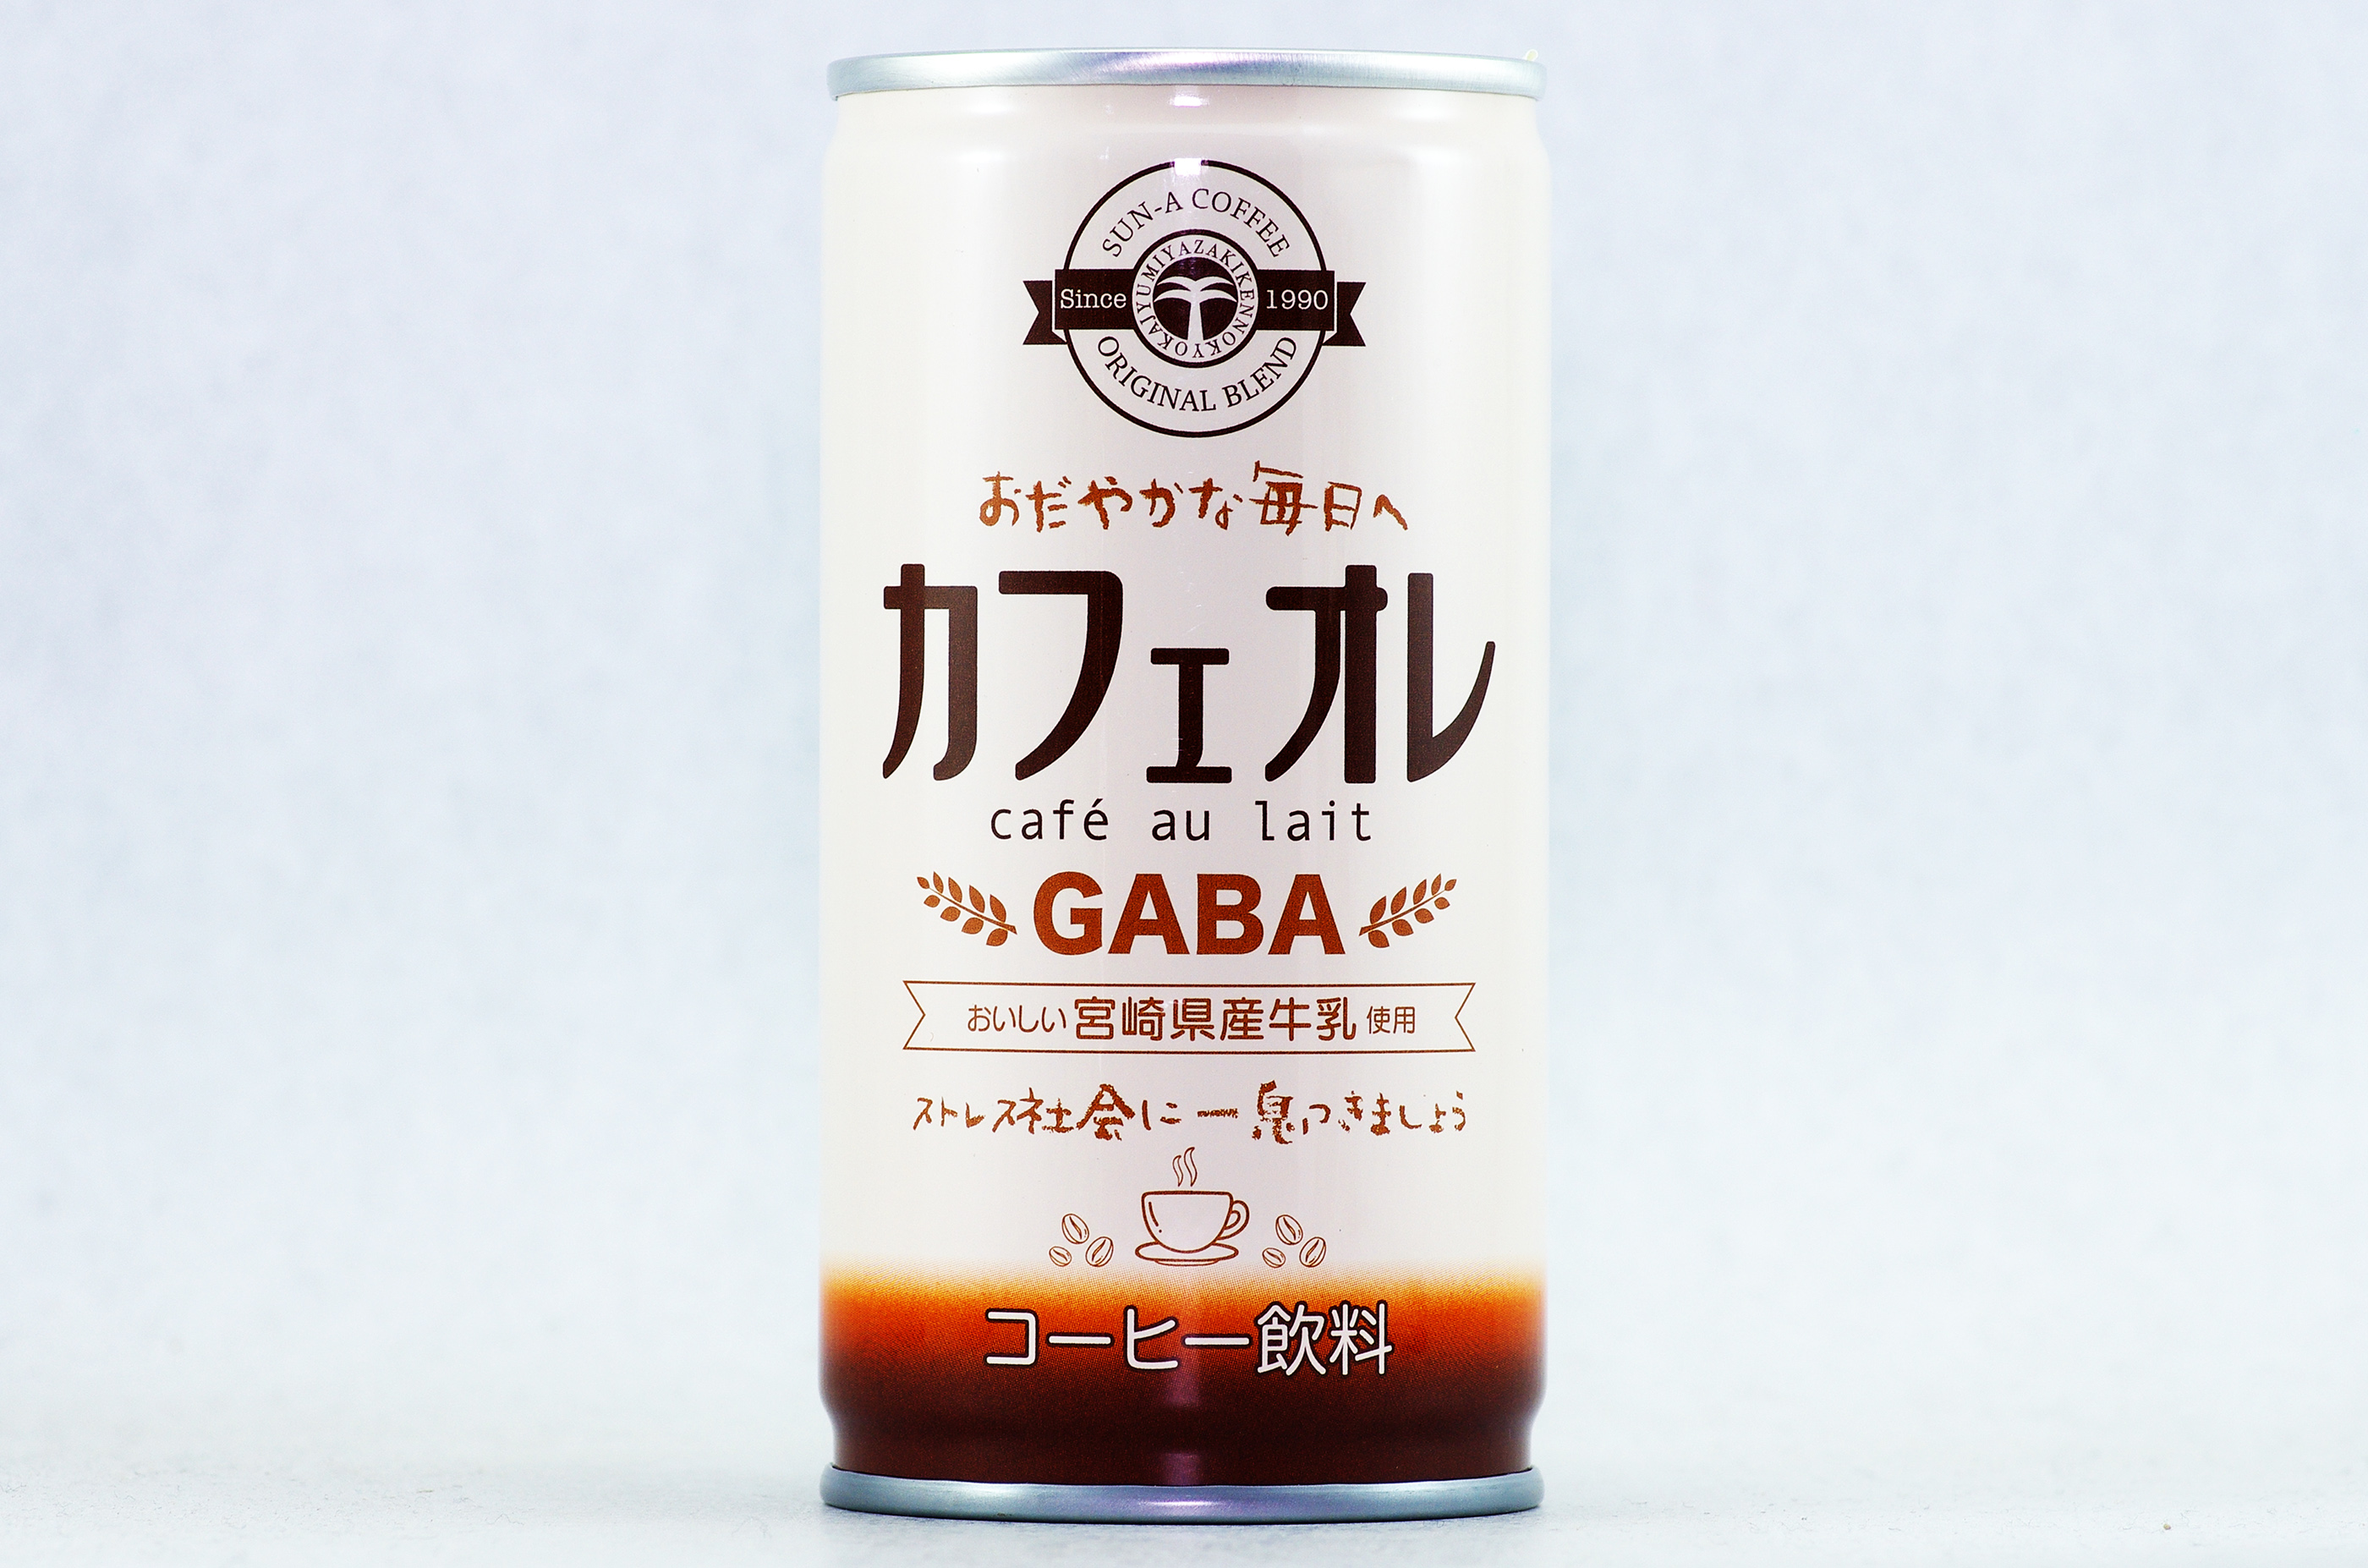 缶コーヒーマニア 宮崎県農協果汁株式会社